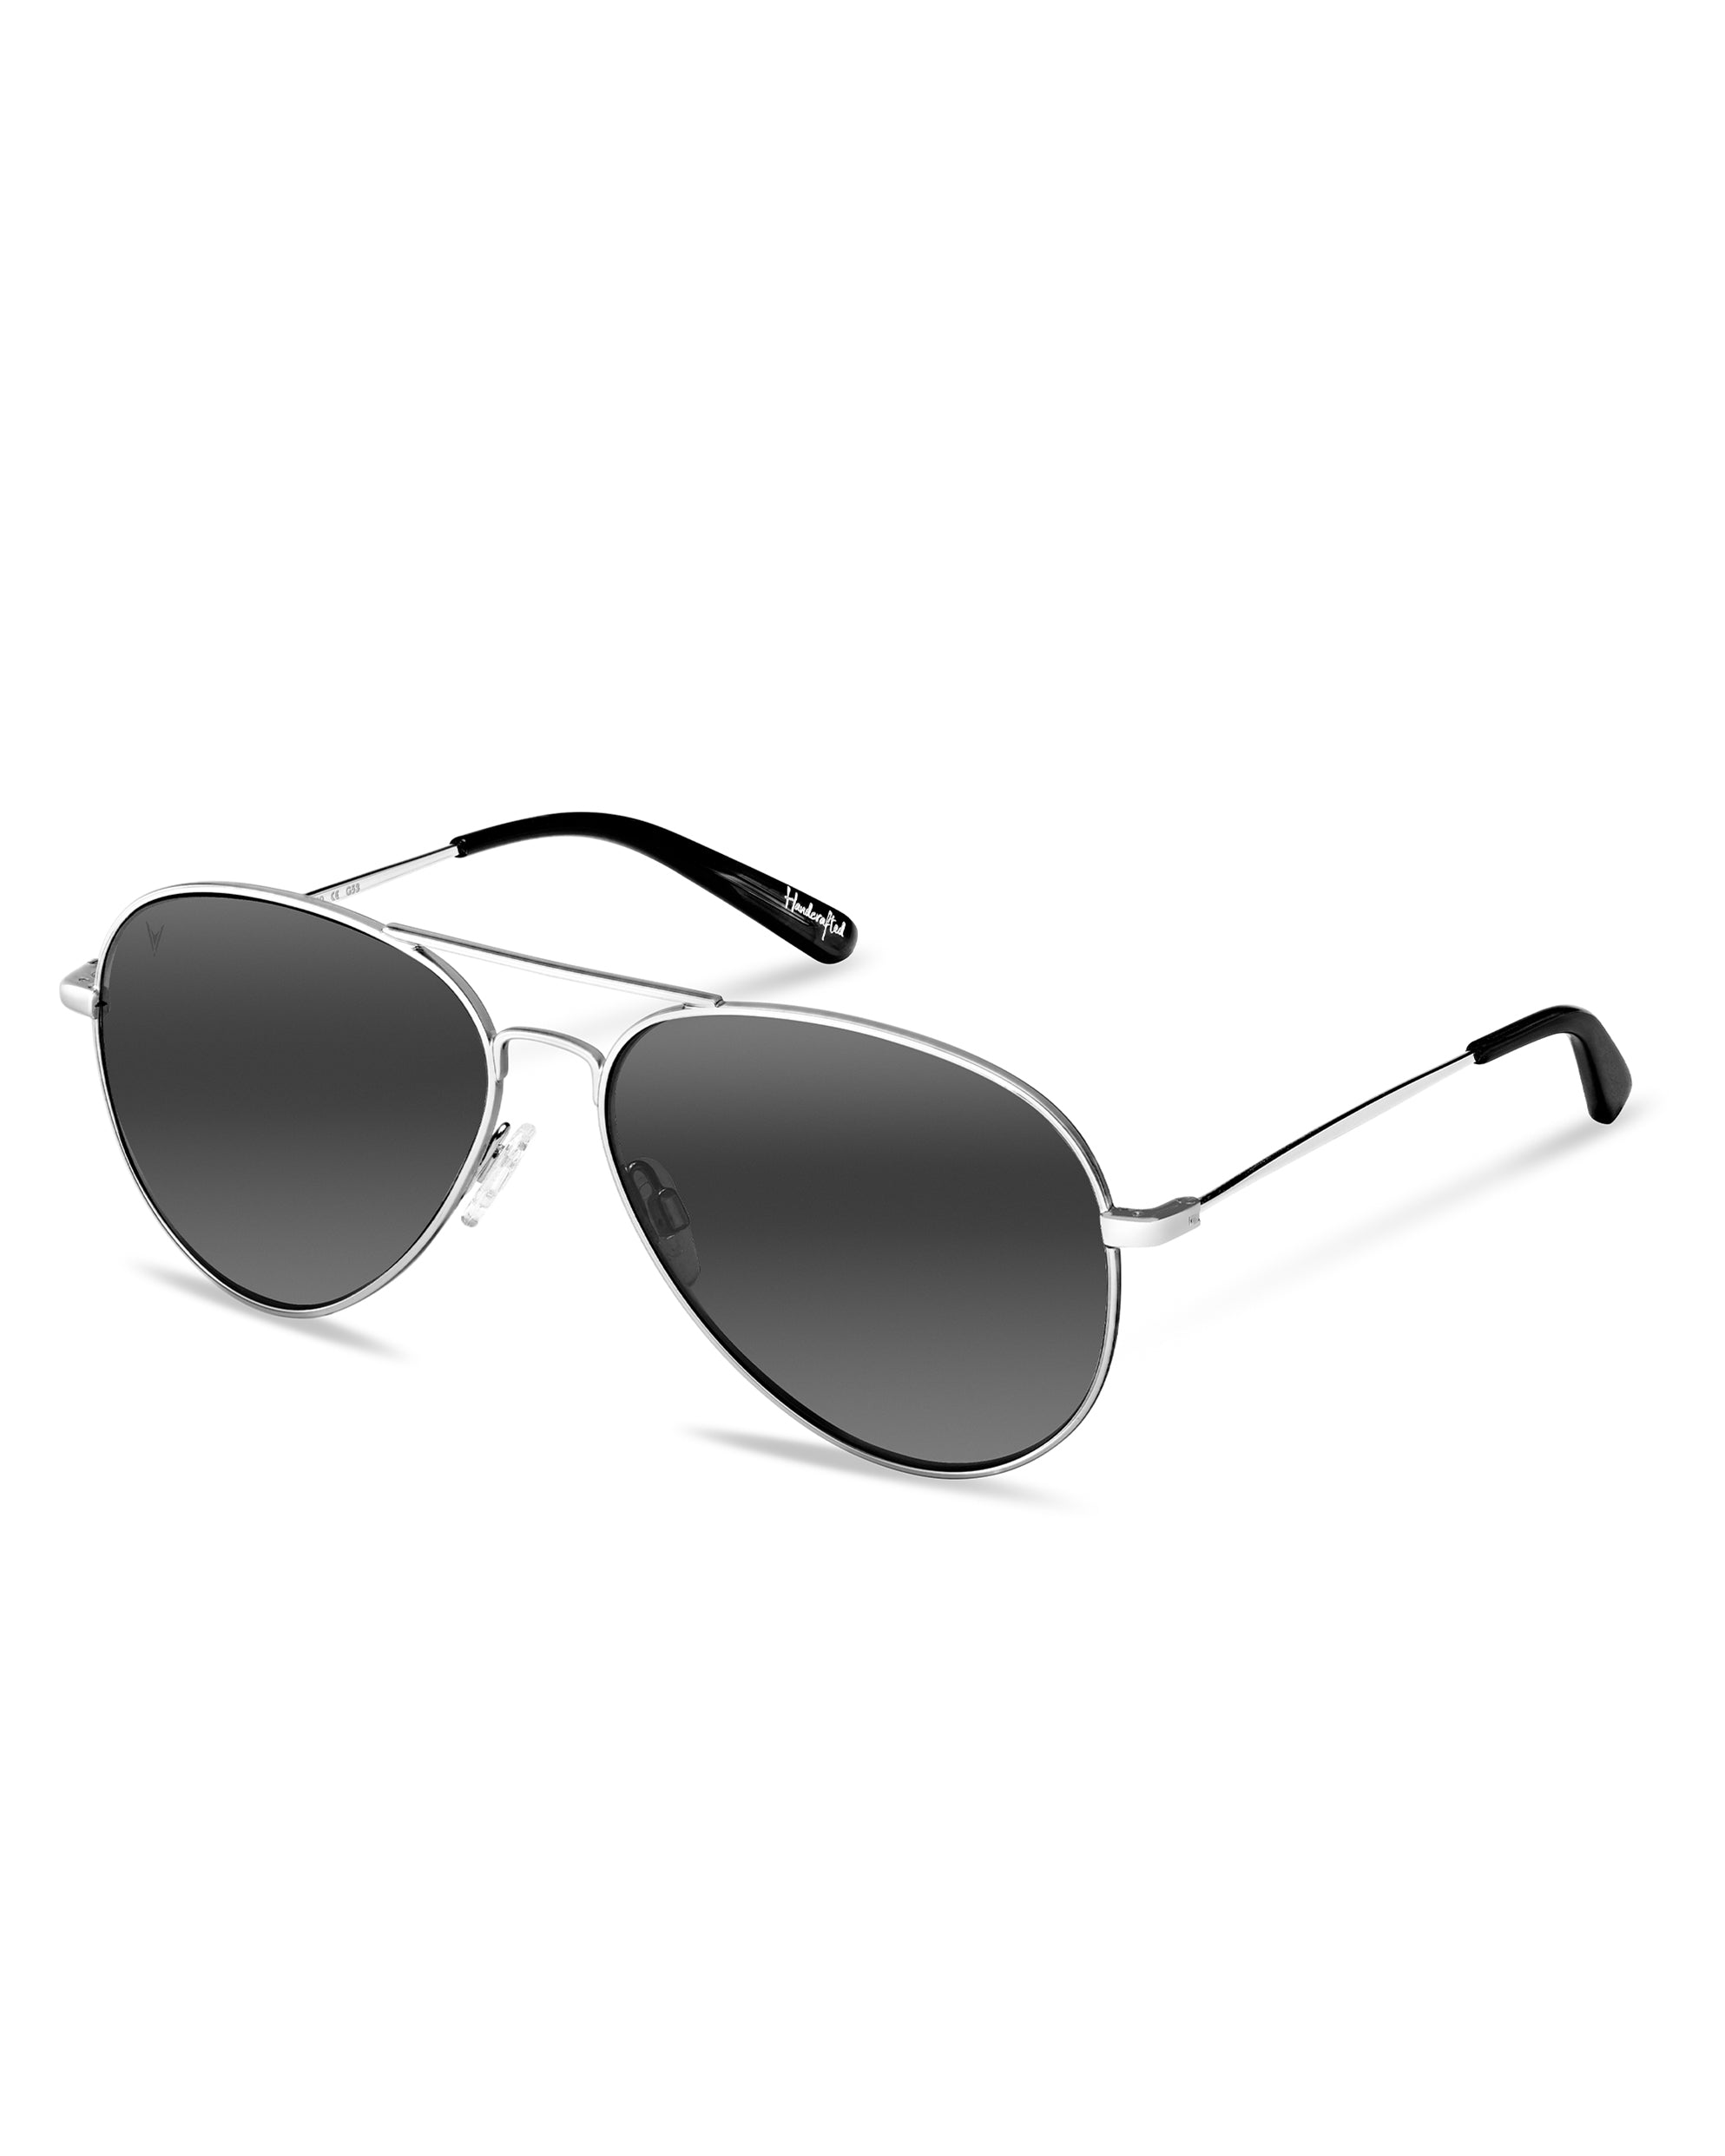 Men's & Womens Sunglasses - The Aviator - Silver Mirror